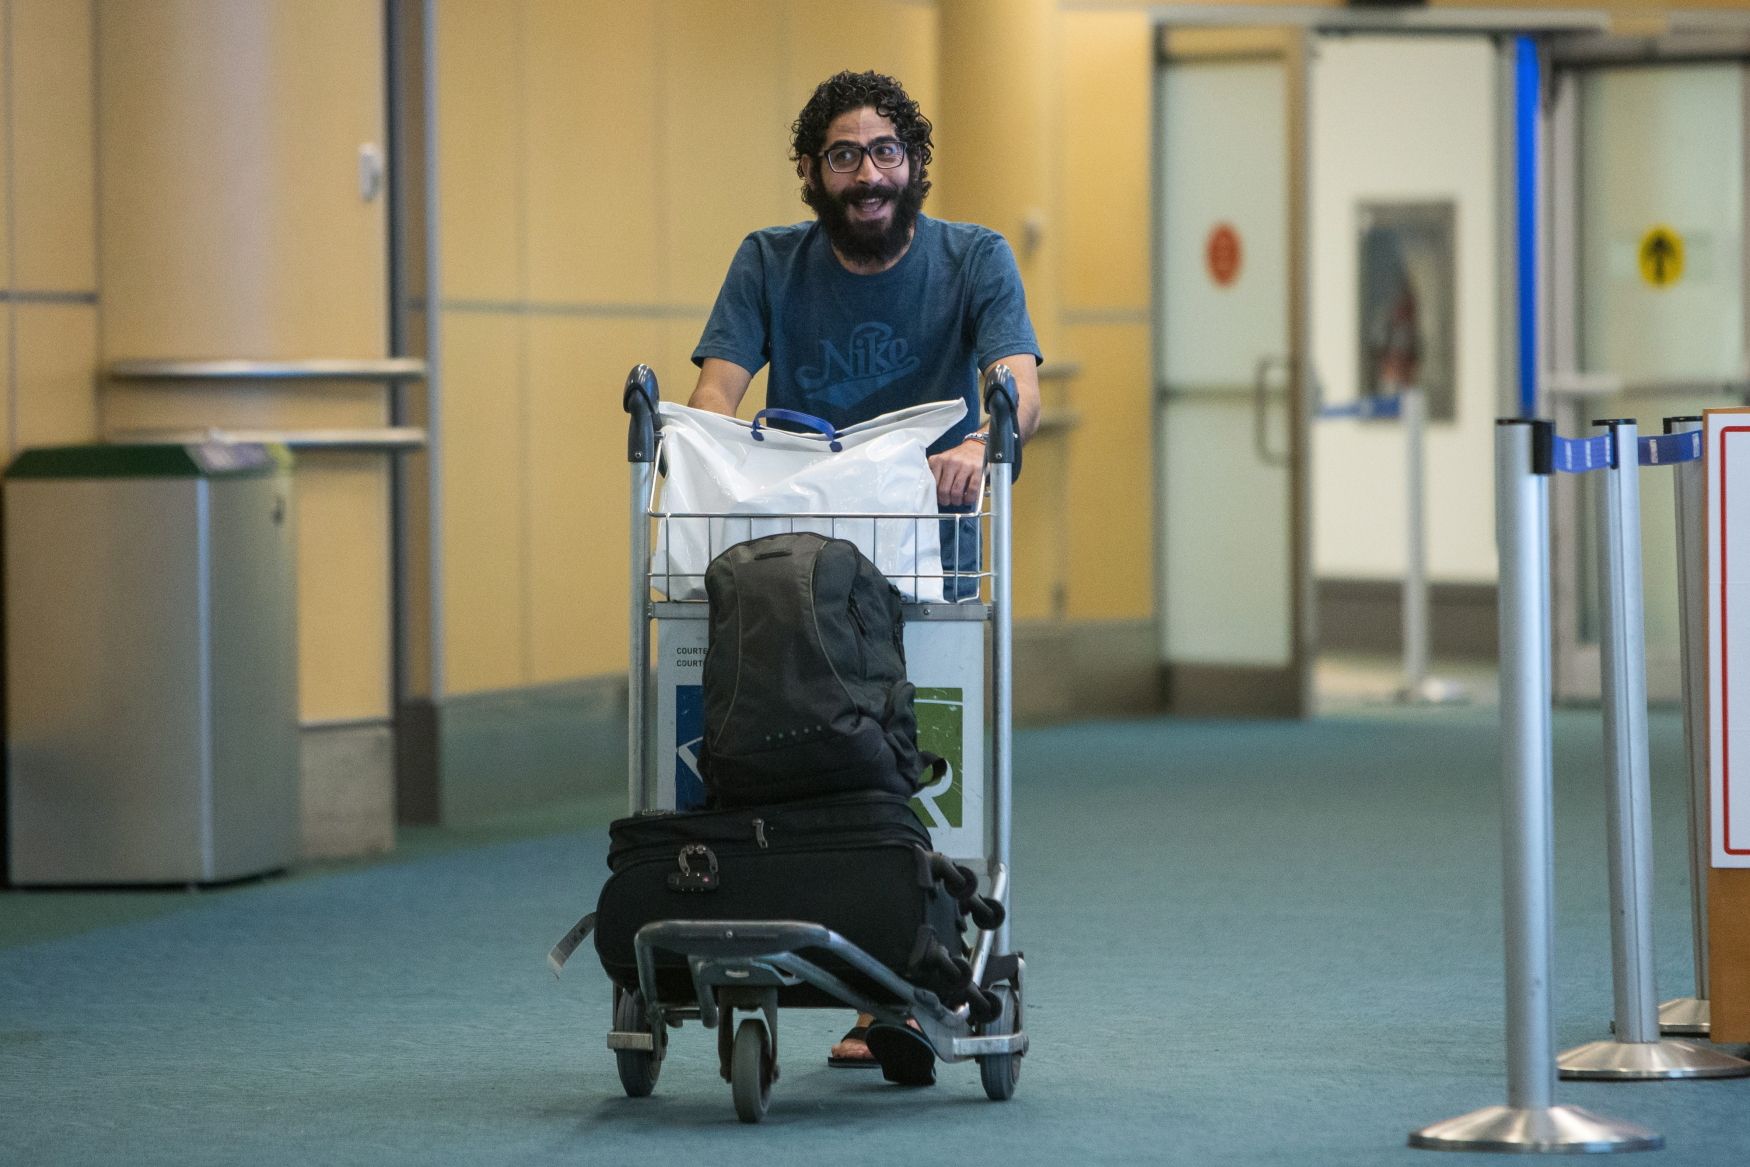 Syřan, který měsíce žil na malajsijském letišti, dorazil do Kanady